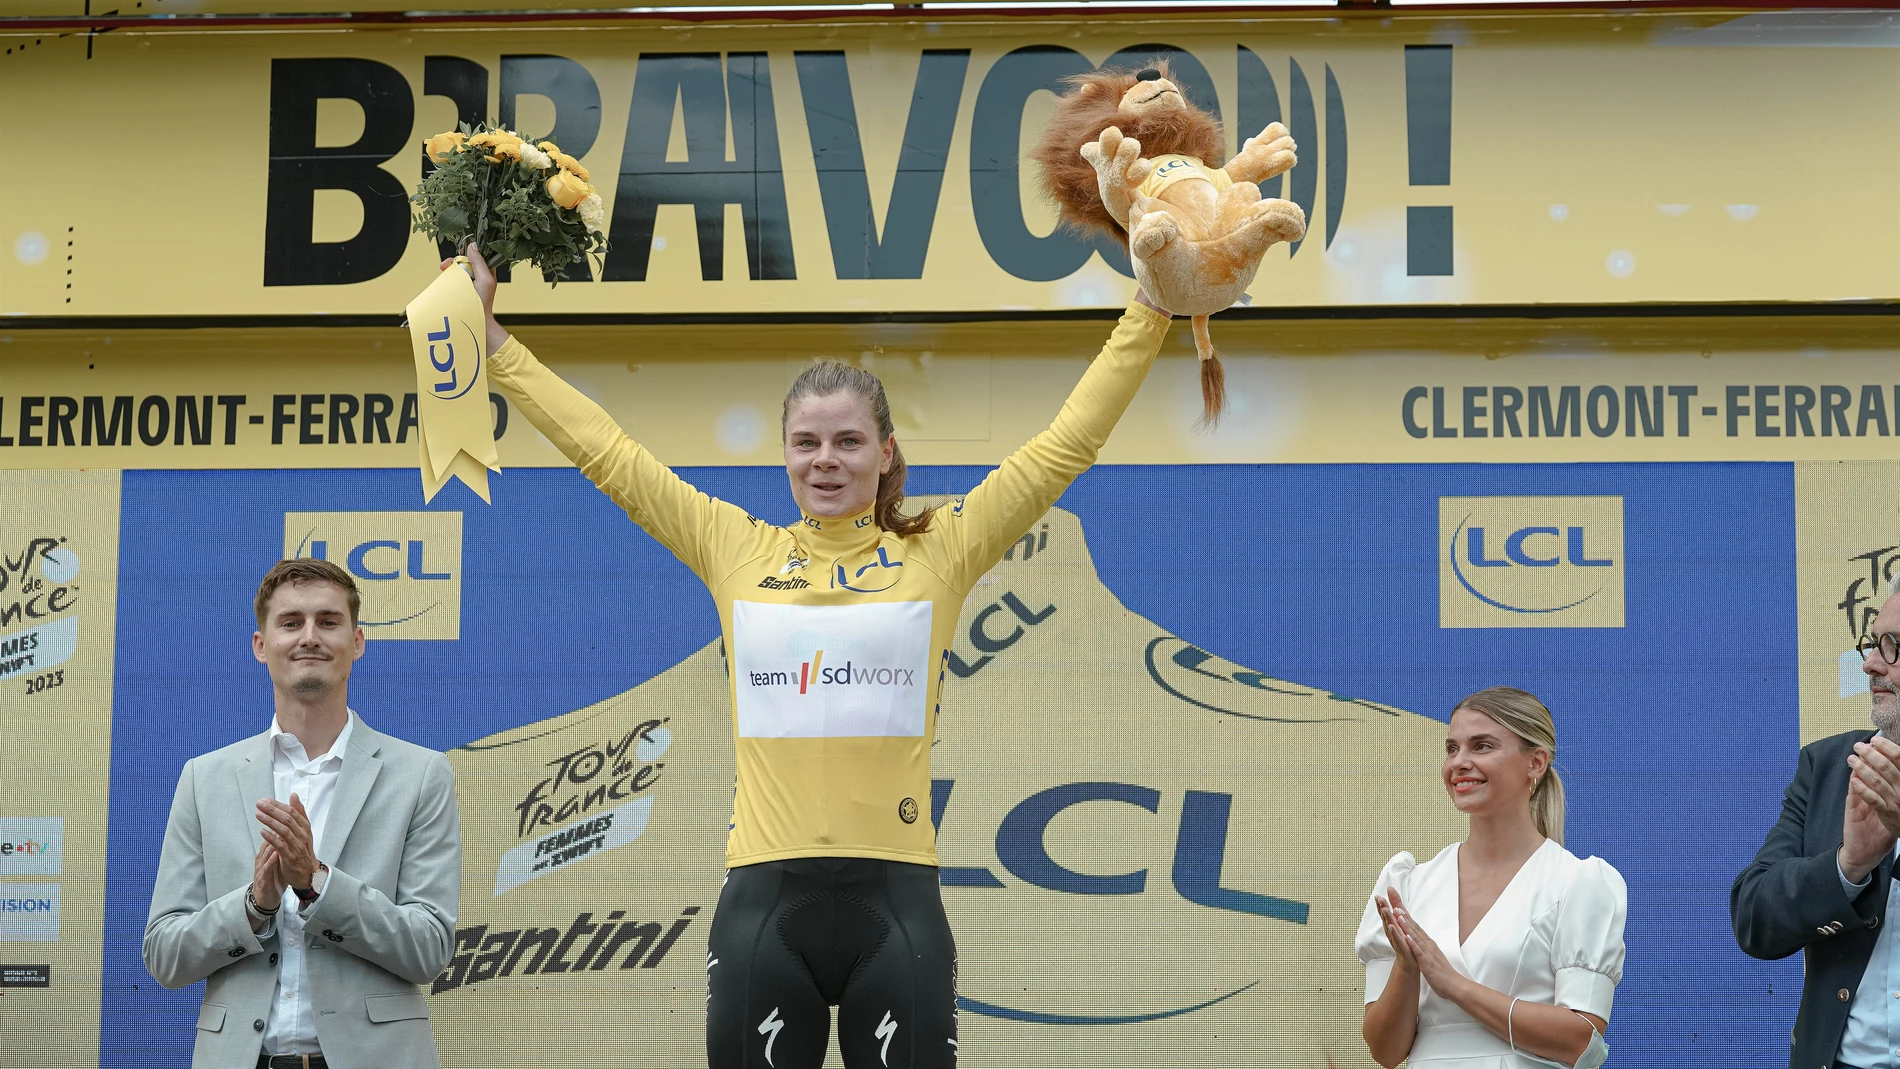 23/07/2023 - Tour de France Femmes avec Zwift 2023 - Etape 1 - Clermont-Ferrand / Clermont-Ferrand (123,8 km) - KOPECKY Lotte (TEAM SD WORX) - Avec le maillot Jaune THOMAS MAHEUX 23/07/2023